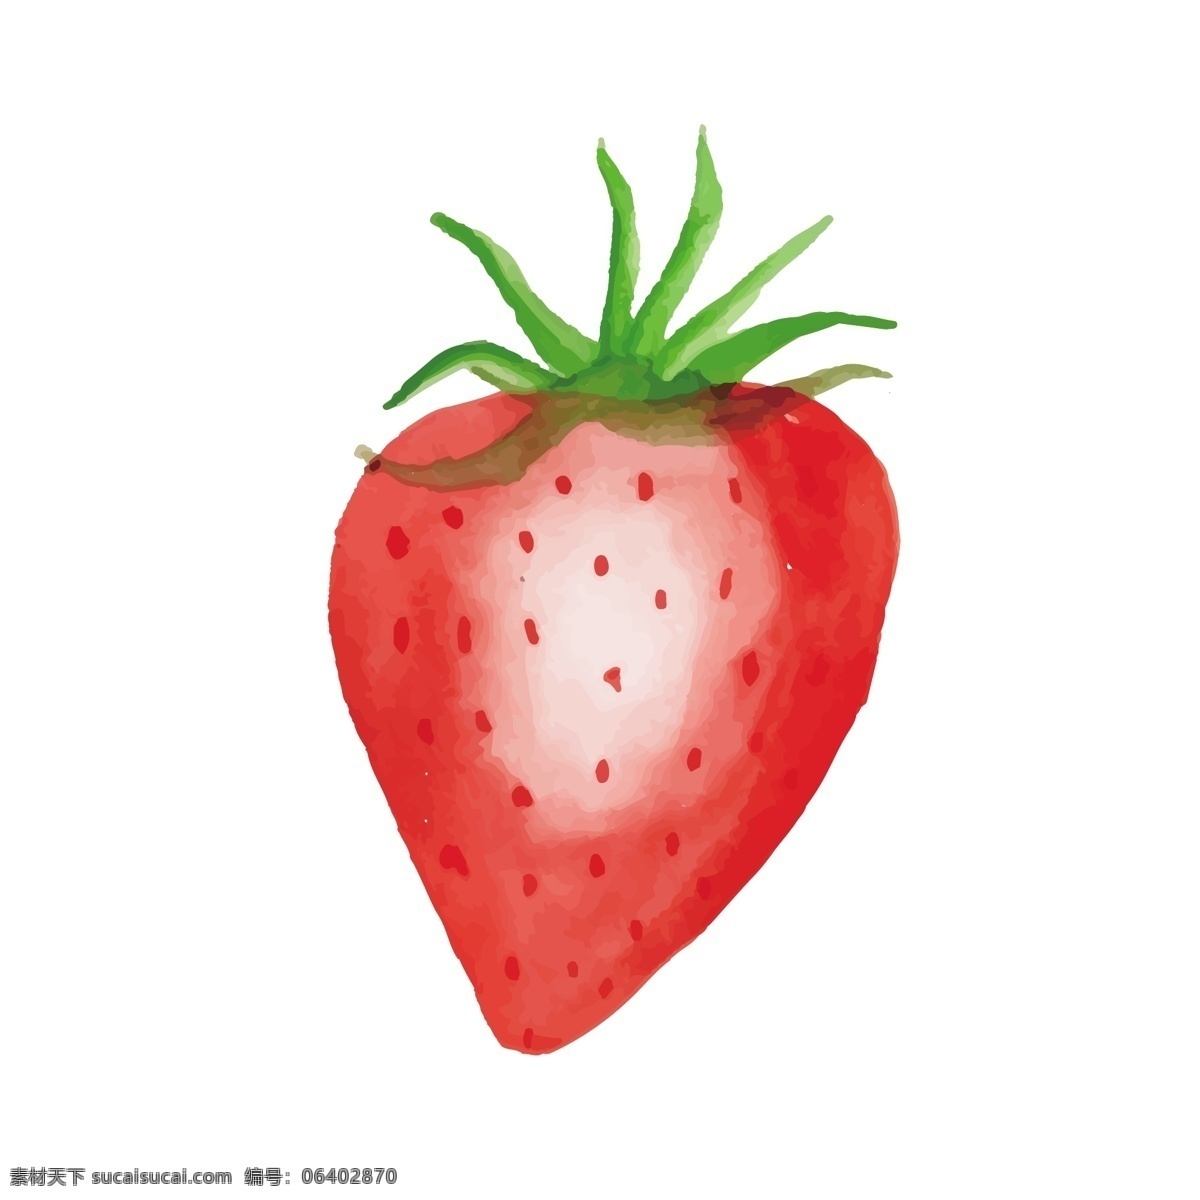 水彩 晶莹剔透 草莓 矢量 红色 红色草莓 卡通 卡通草莓 水彩风格 水彩手绘 手绘草莓